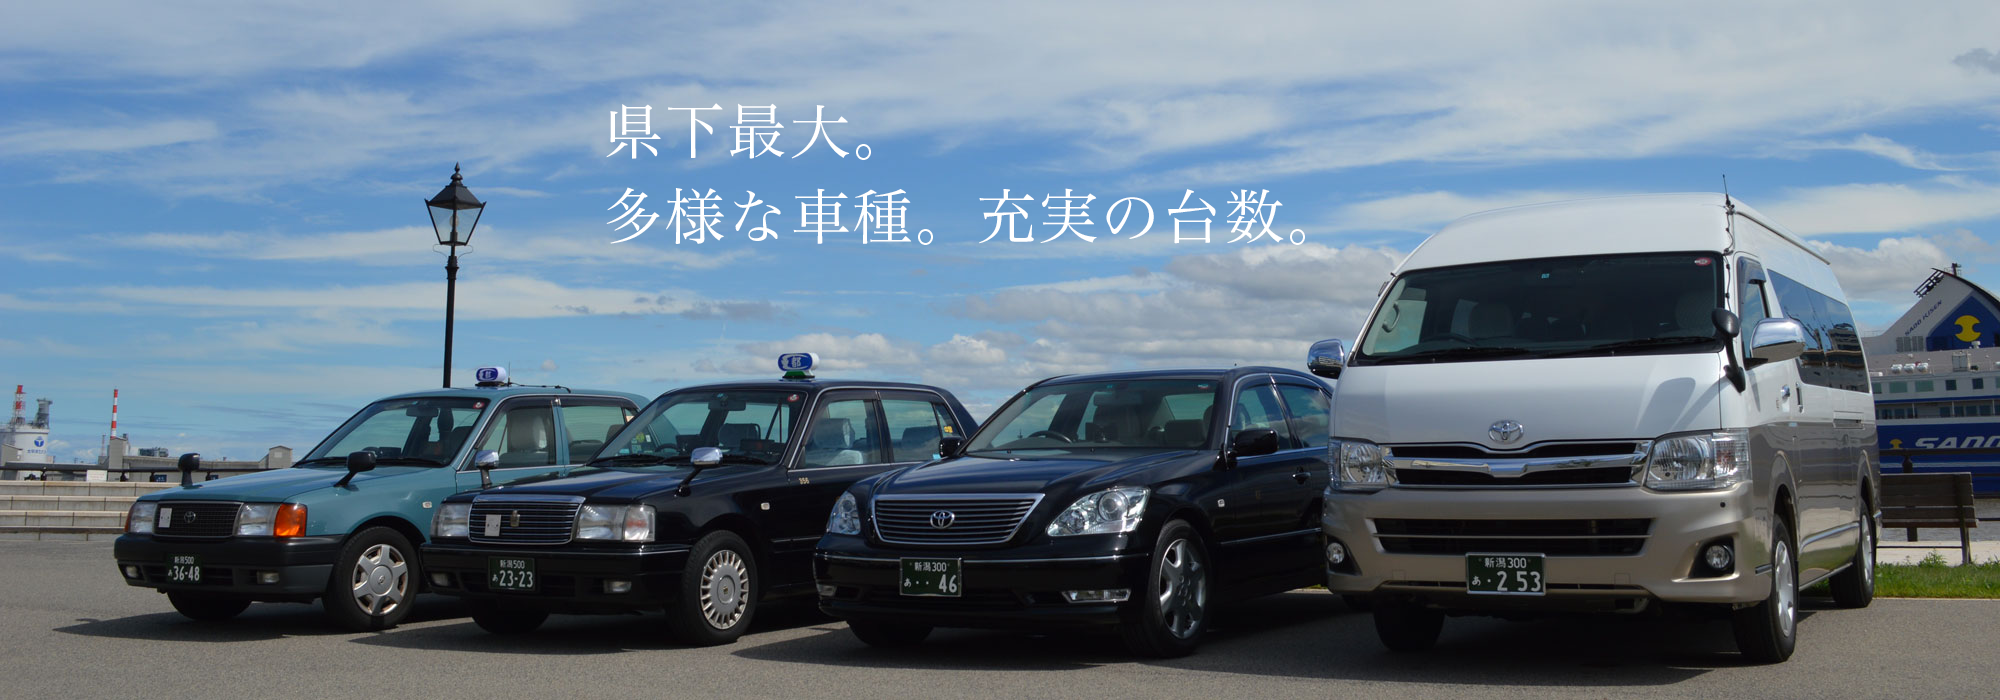 都タクシー 新潟 公式サイト